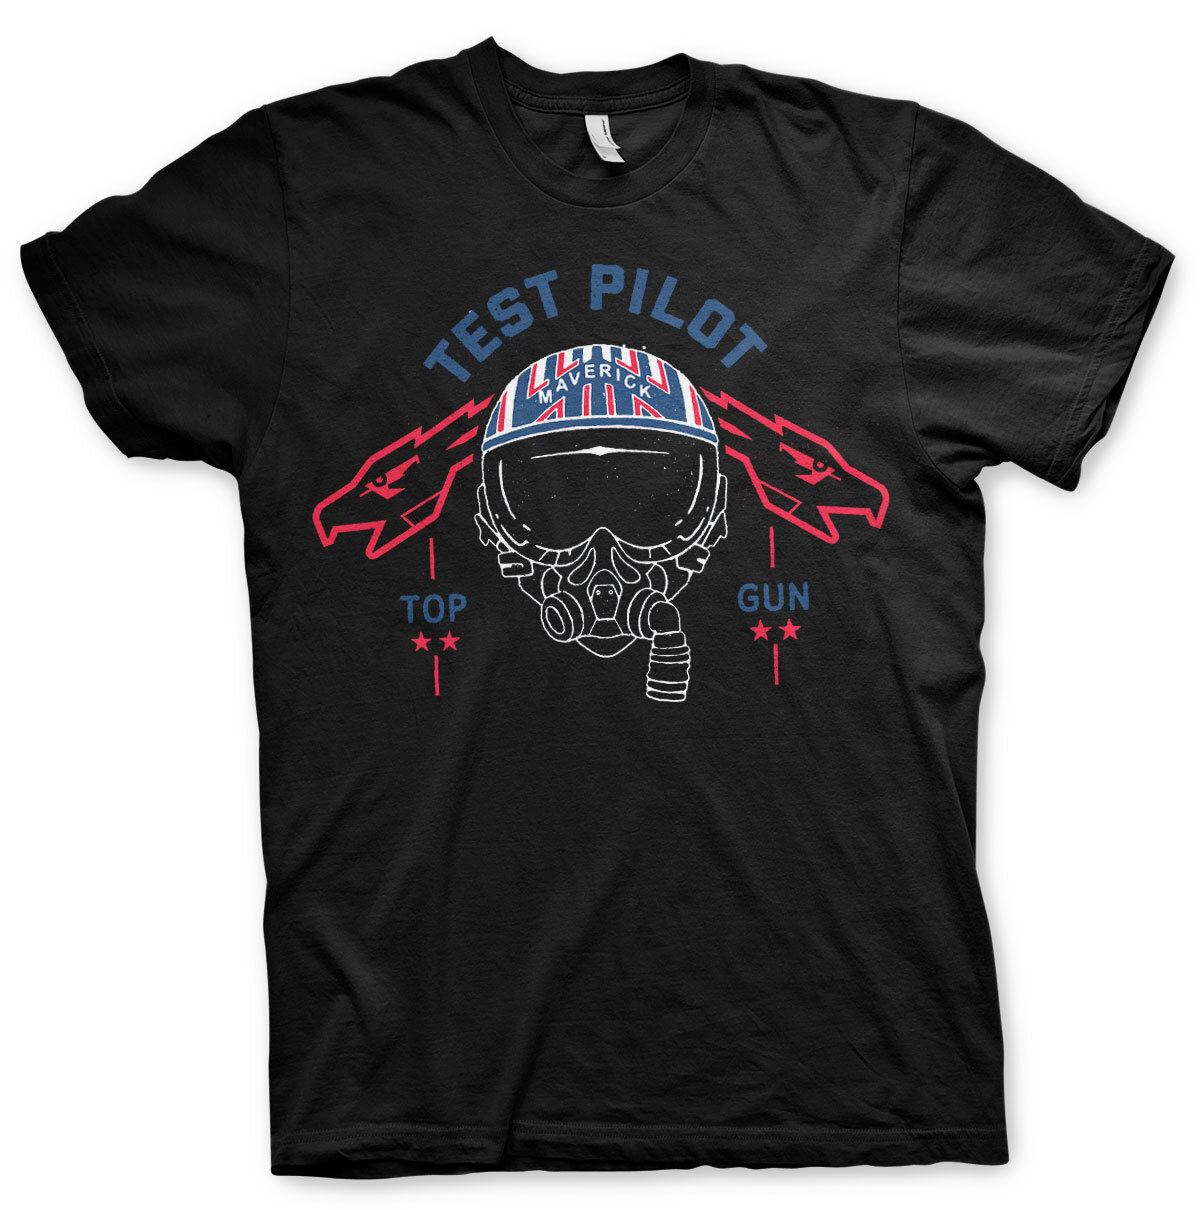 Top Gun Test Pilot T-Shirt